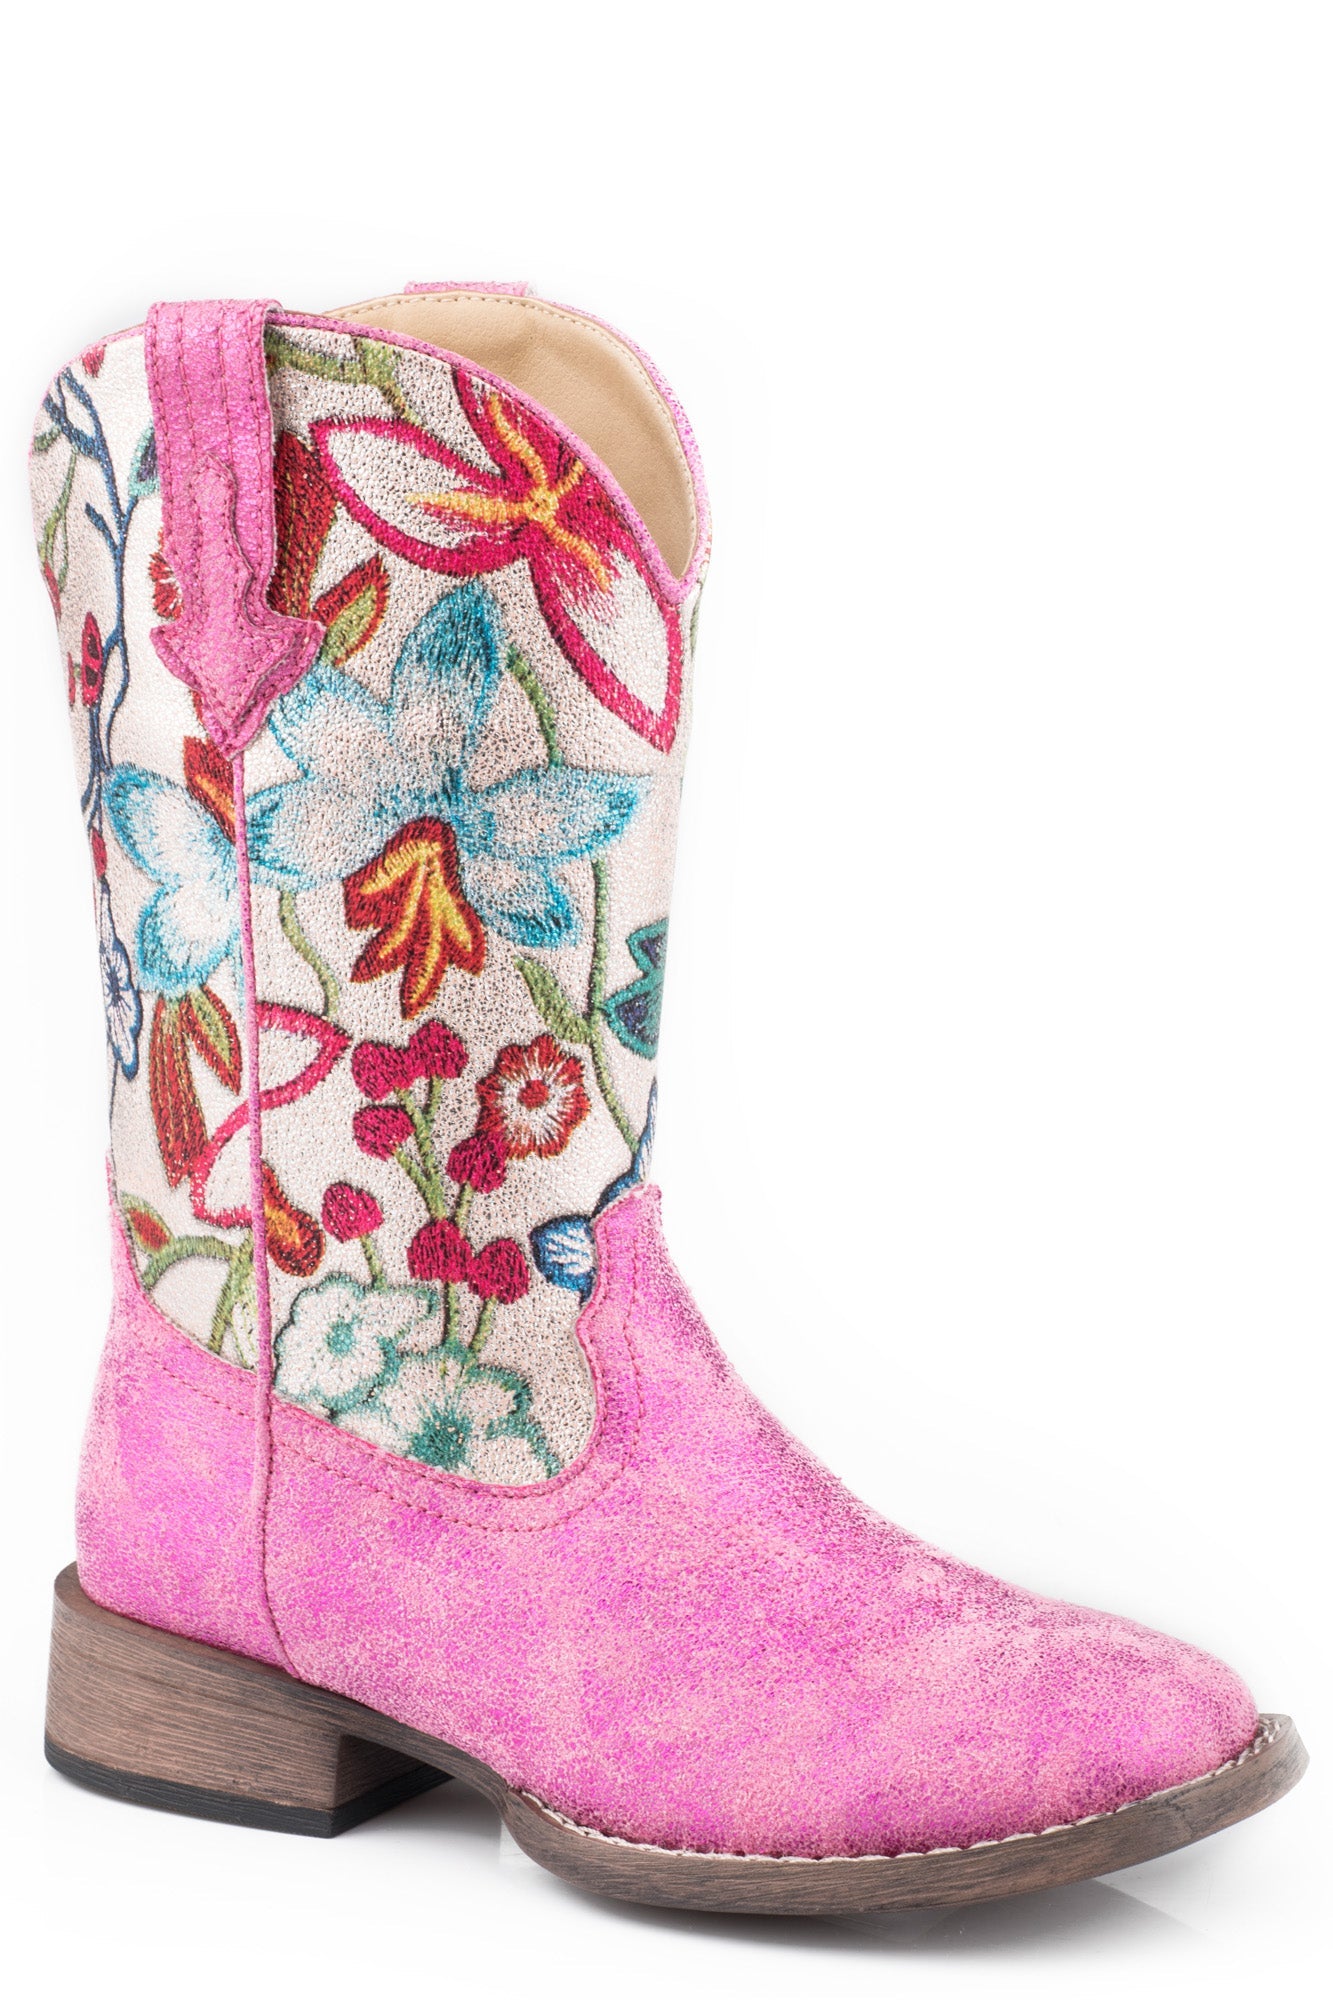 kids pink cowboy boots